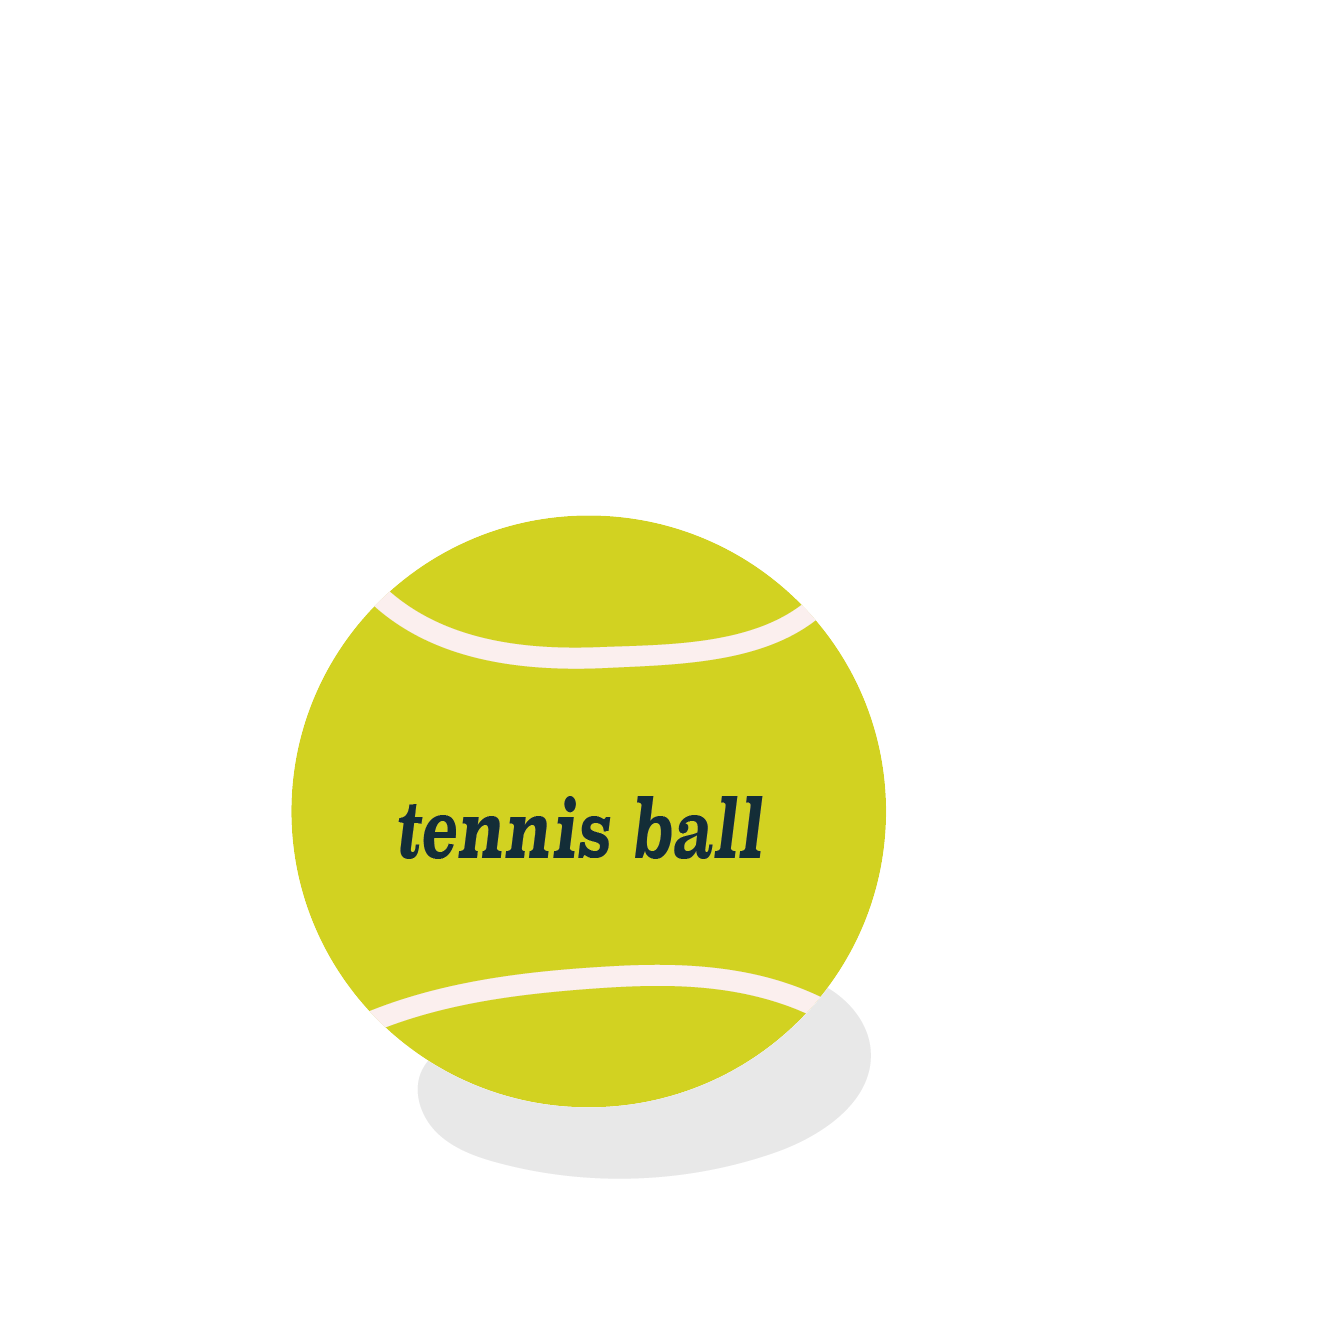 テニスの硬式ボール 無料 イラスト スポーツ 商用フリー 無料 のイラスト素材なら イラストマンション